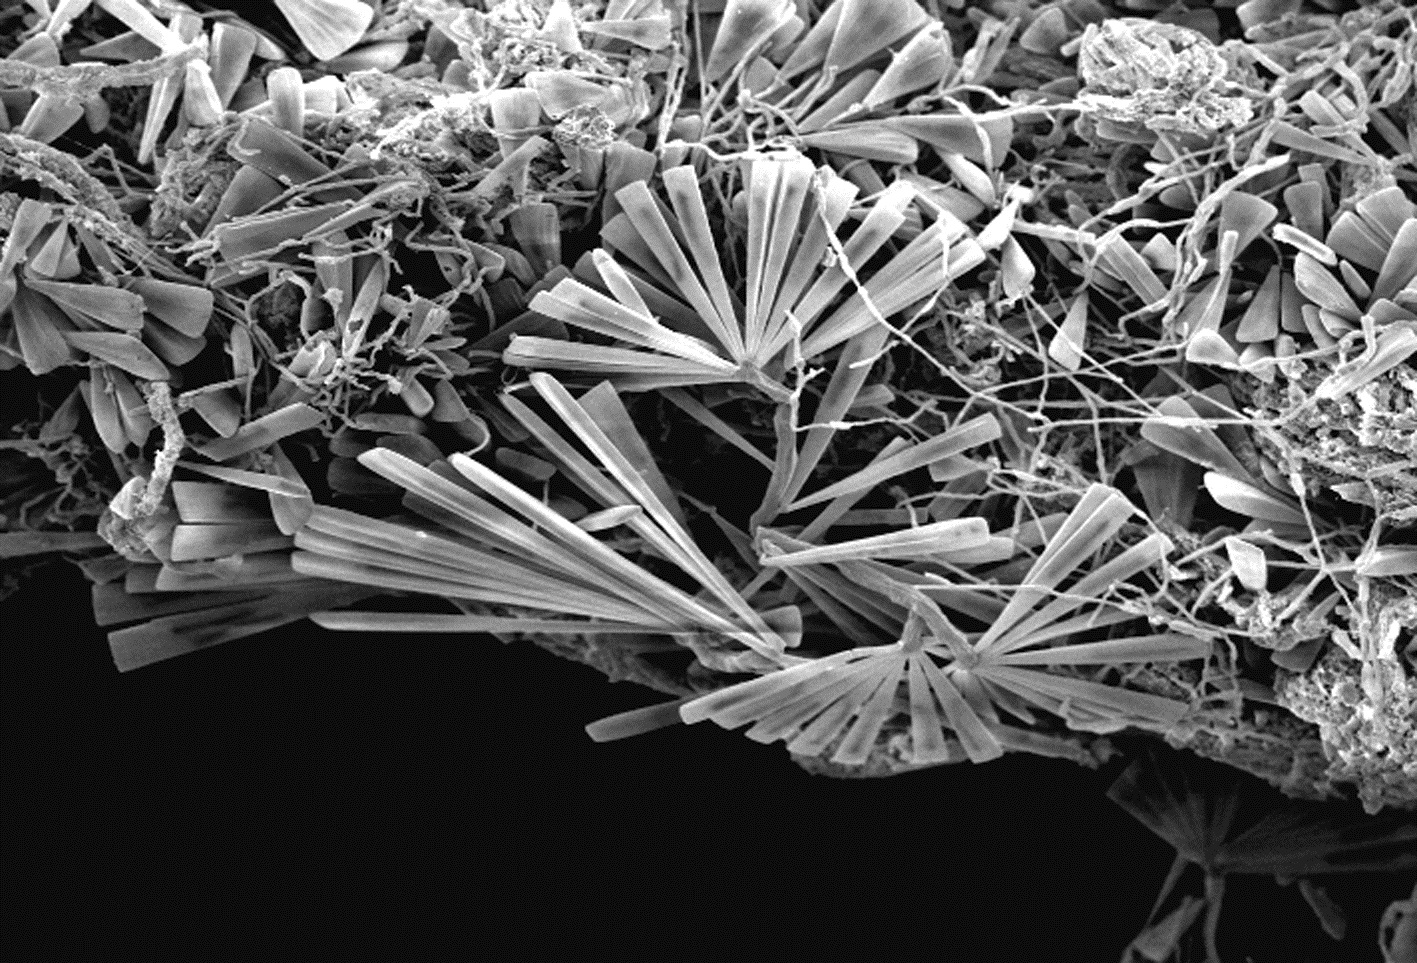 diatomee epibionti sull'idroide Eudendrium racemosum: sono visibili colonie di Licmophora spp. che formano una foresta in miniatura colonizzando tutta la superficie disponibile